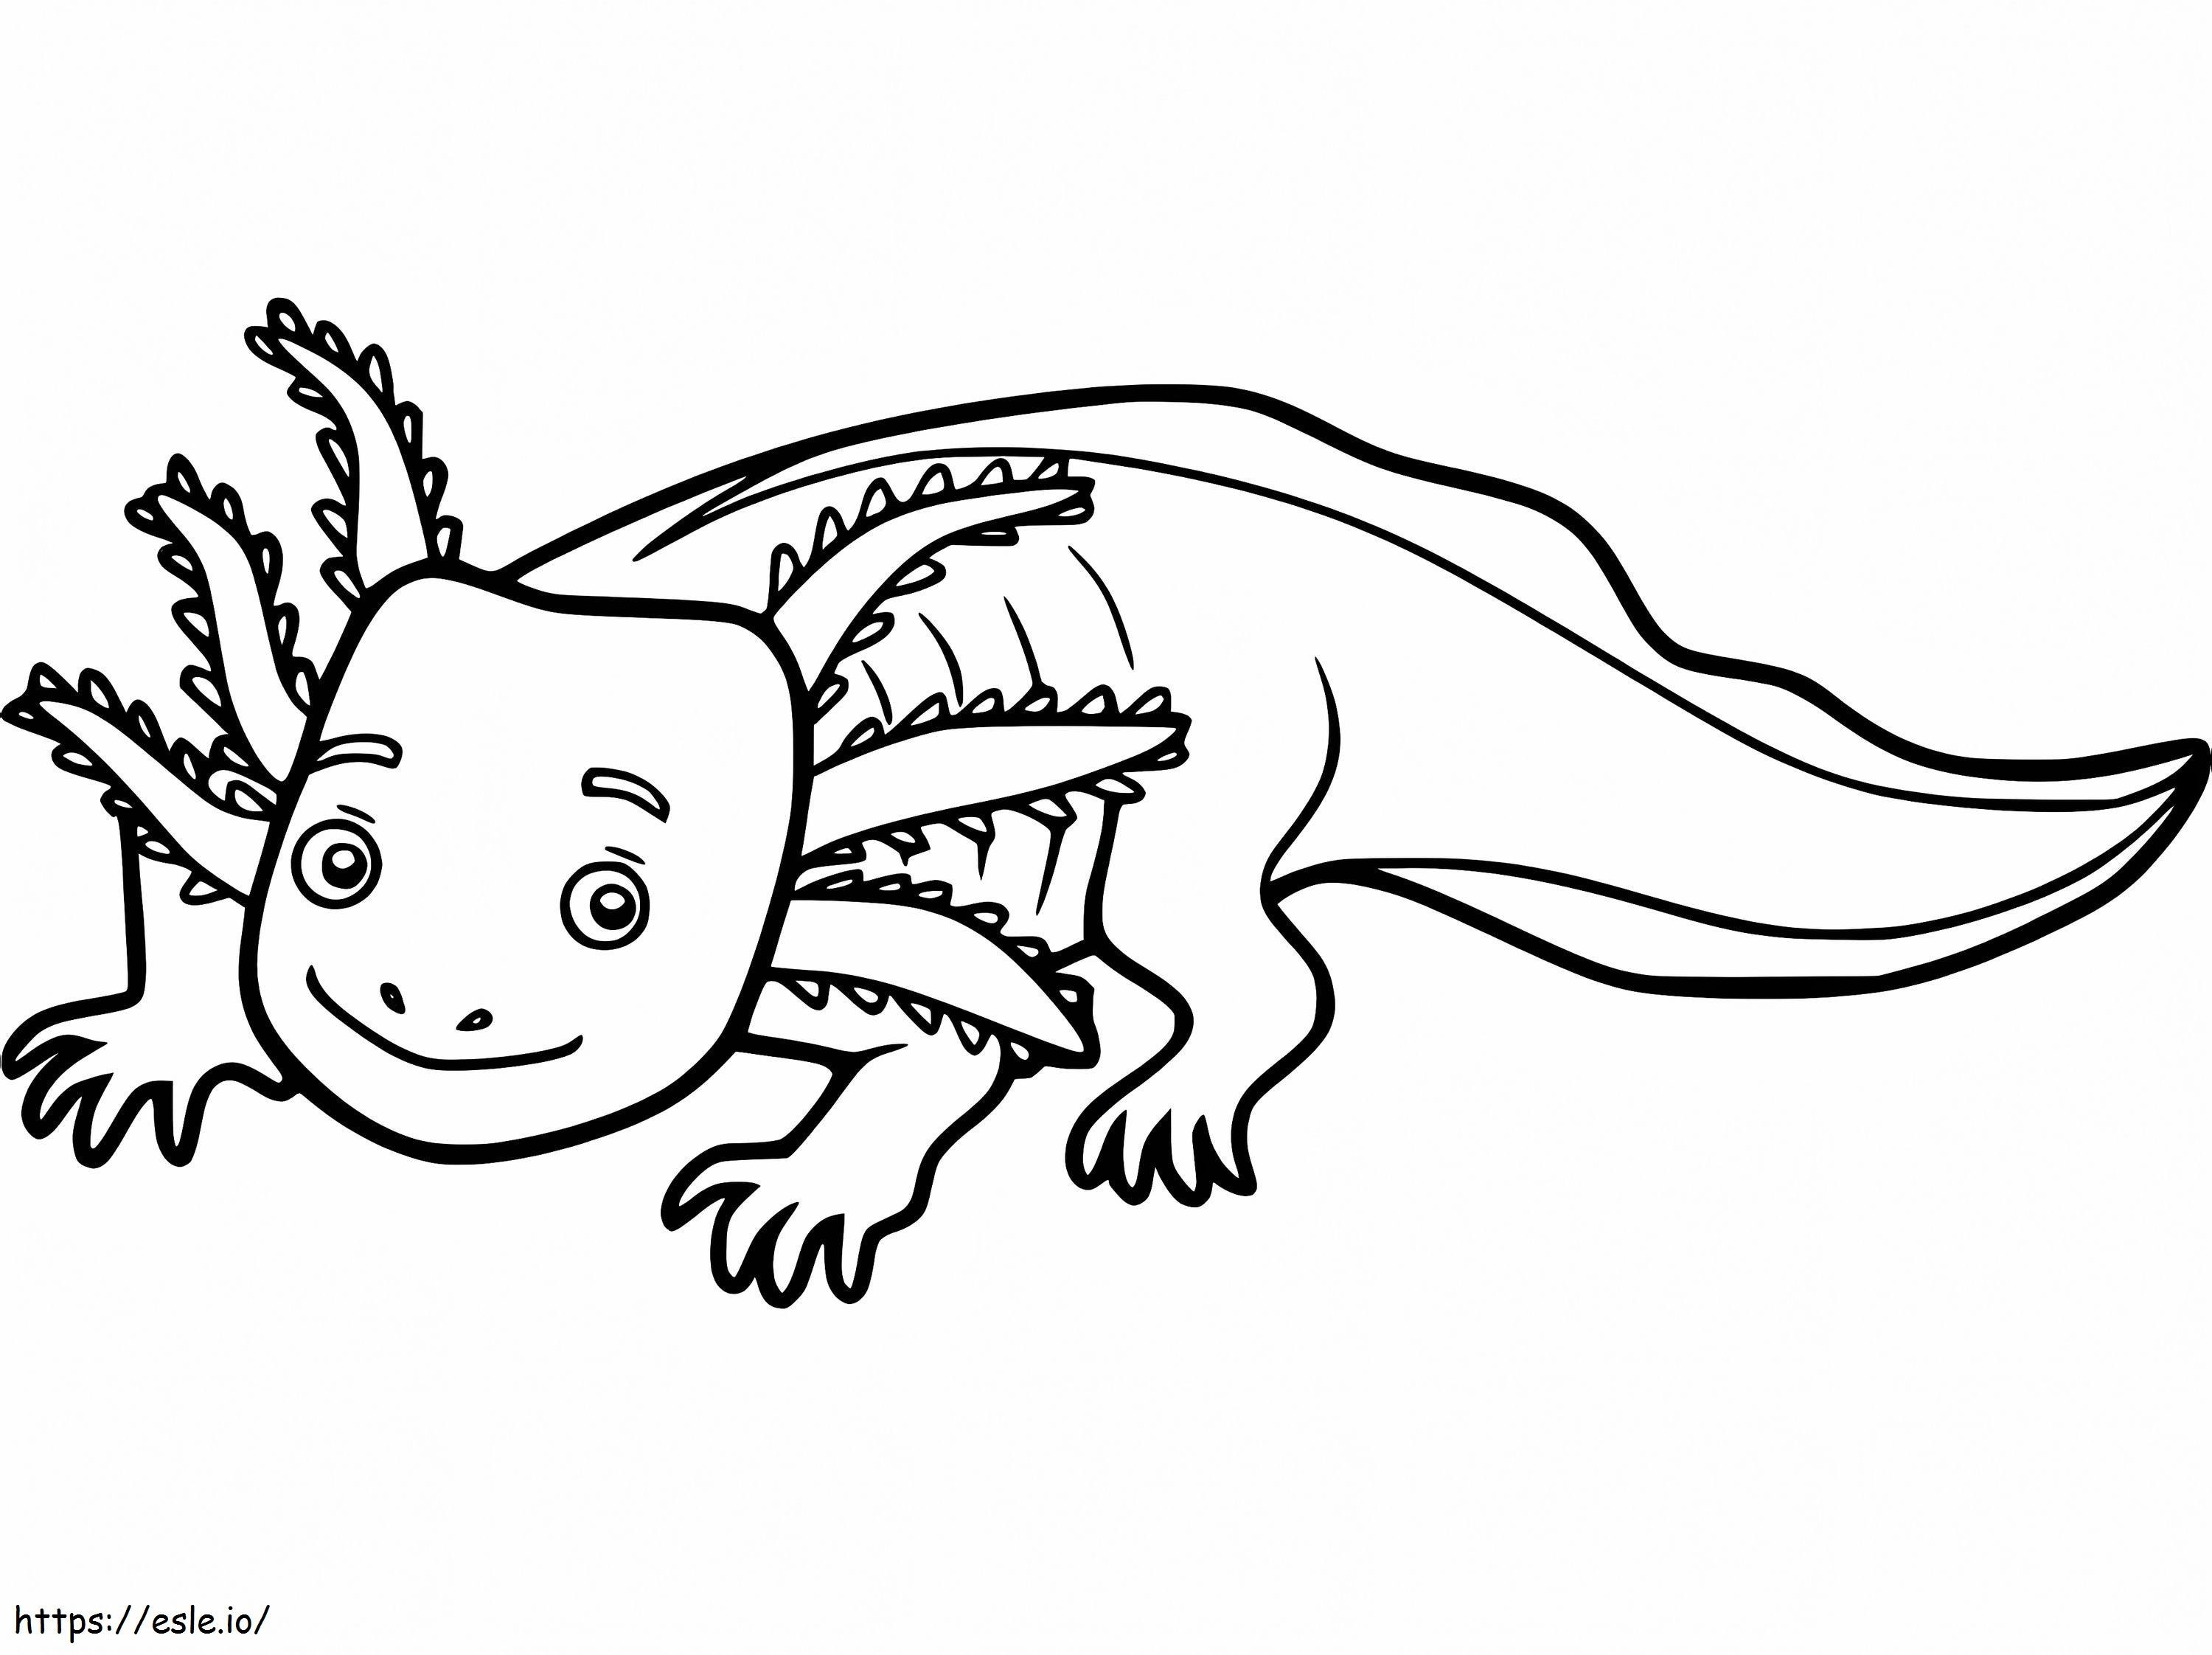 Happy Axolotl coloring page